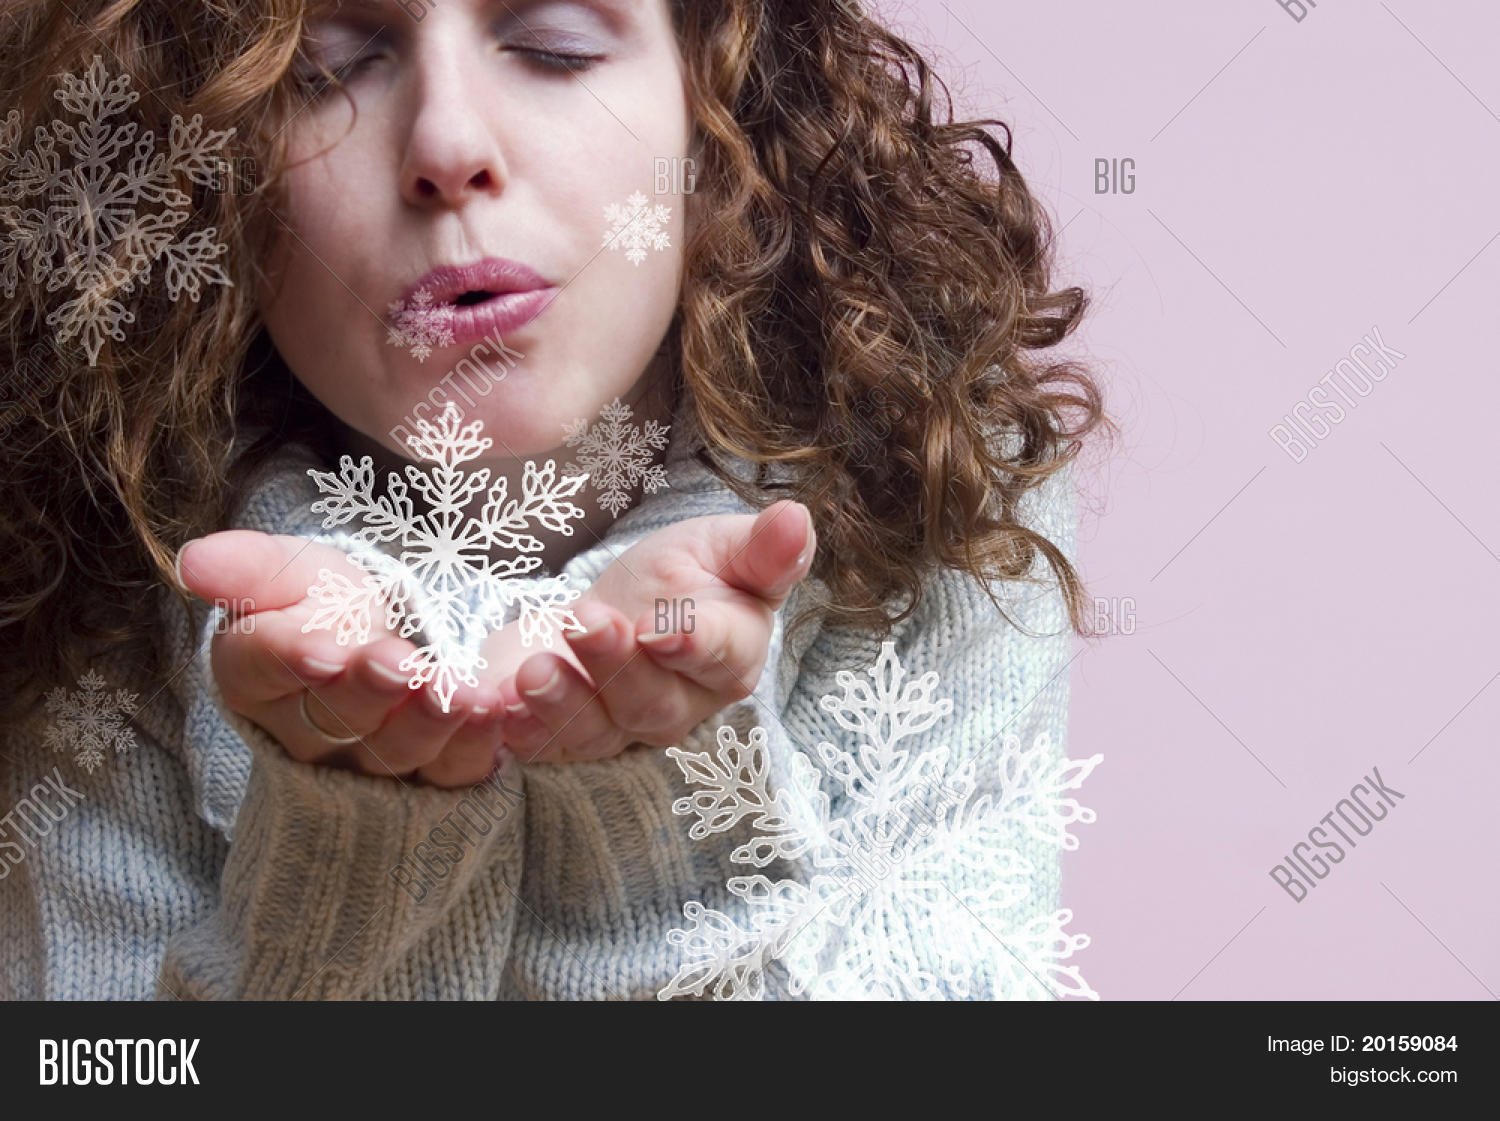 Тают руки тают губы. Снежинка на ладони. Снежинка на носу. Девушка Снежинка. Сдувает снежинки.